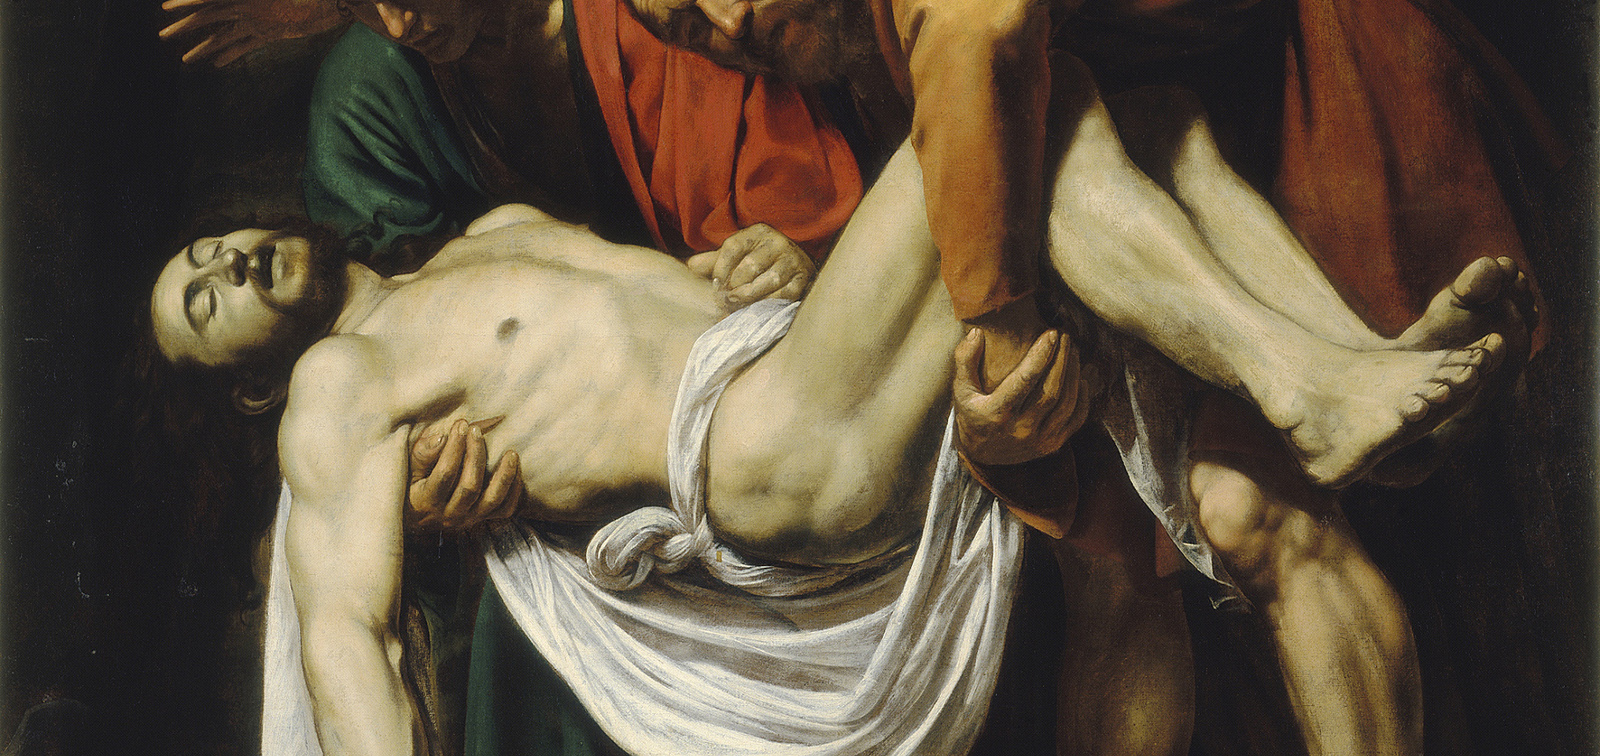 La obra invitada: El Descendimiento, Caravaggio